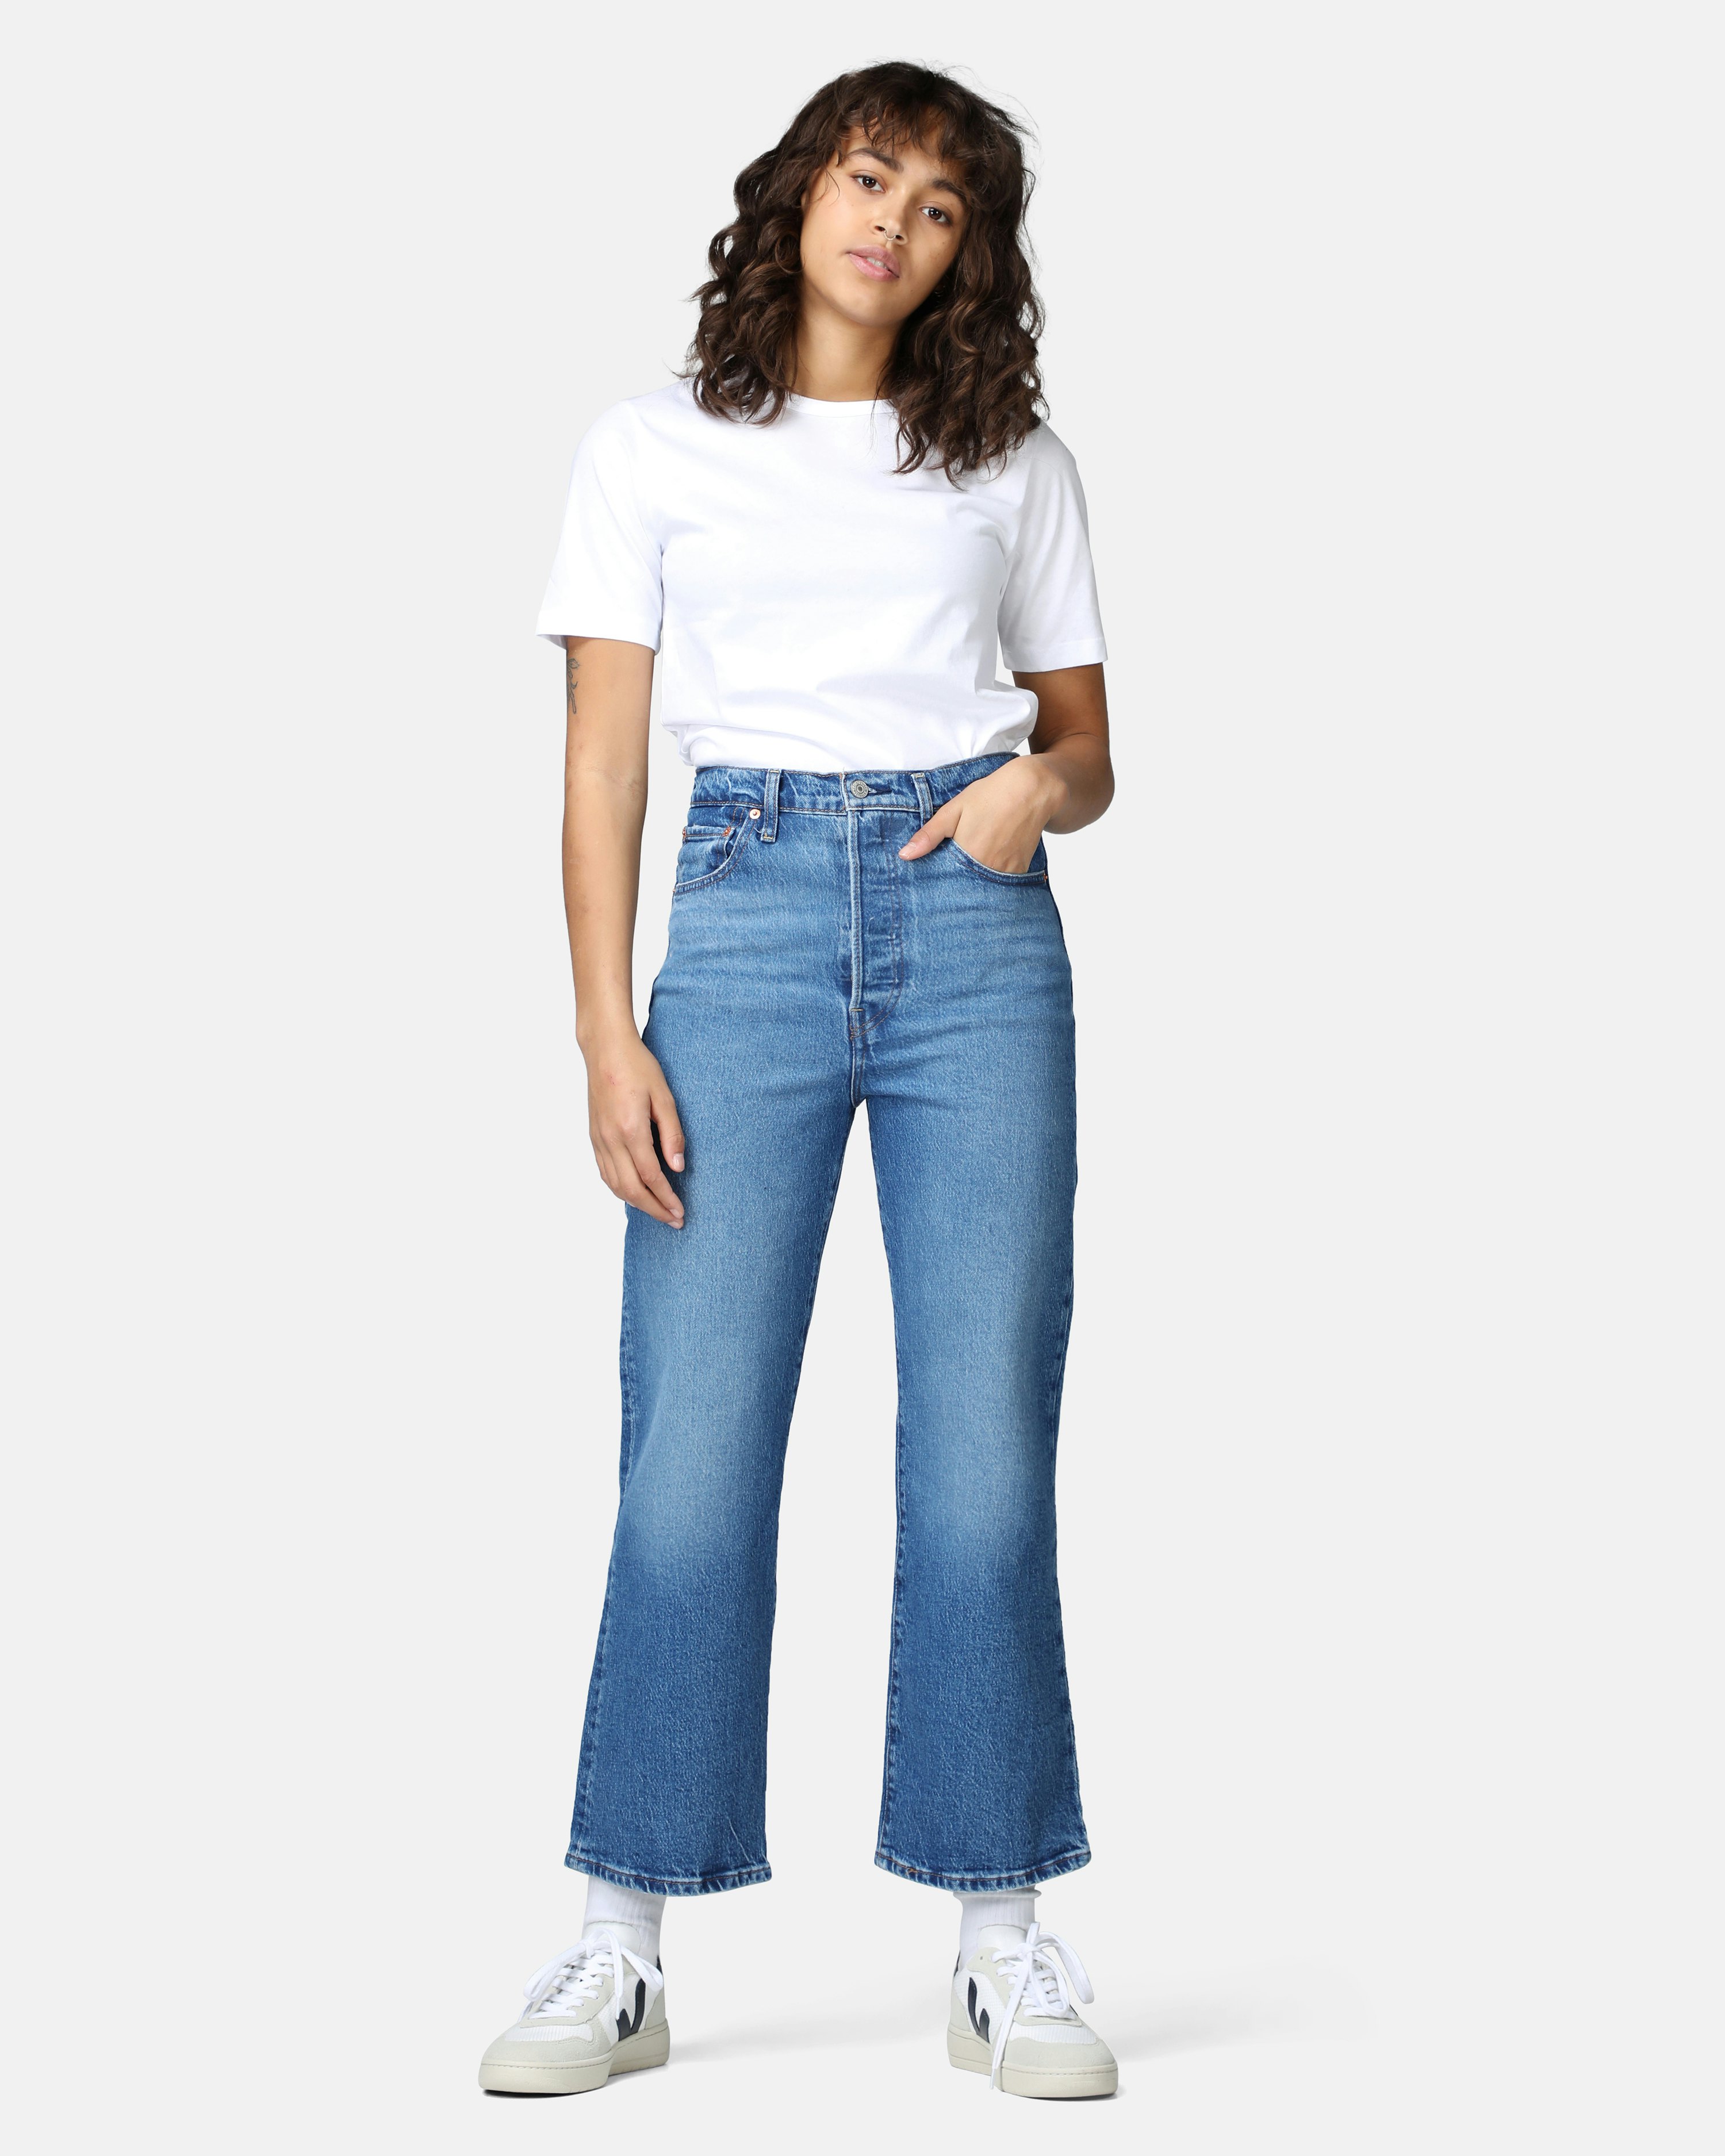 Levis Jeans - Ribcage Crop Bootcut Light blue | Women | Junkyard